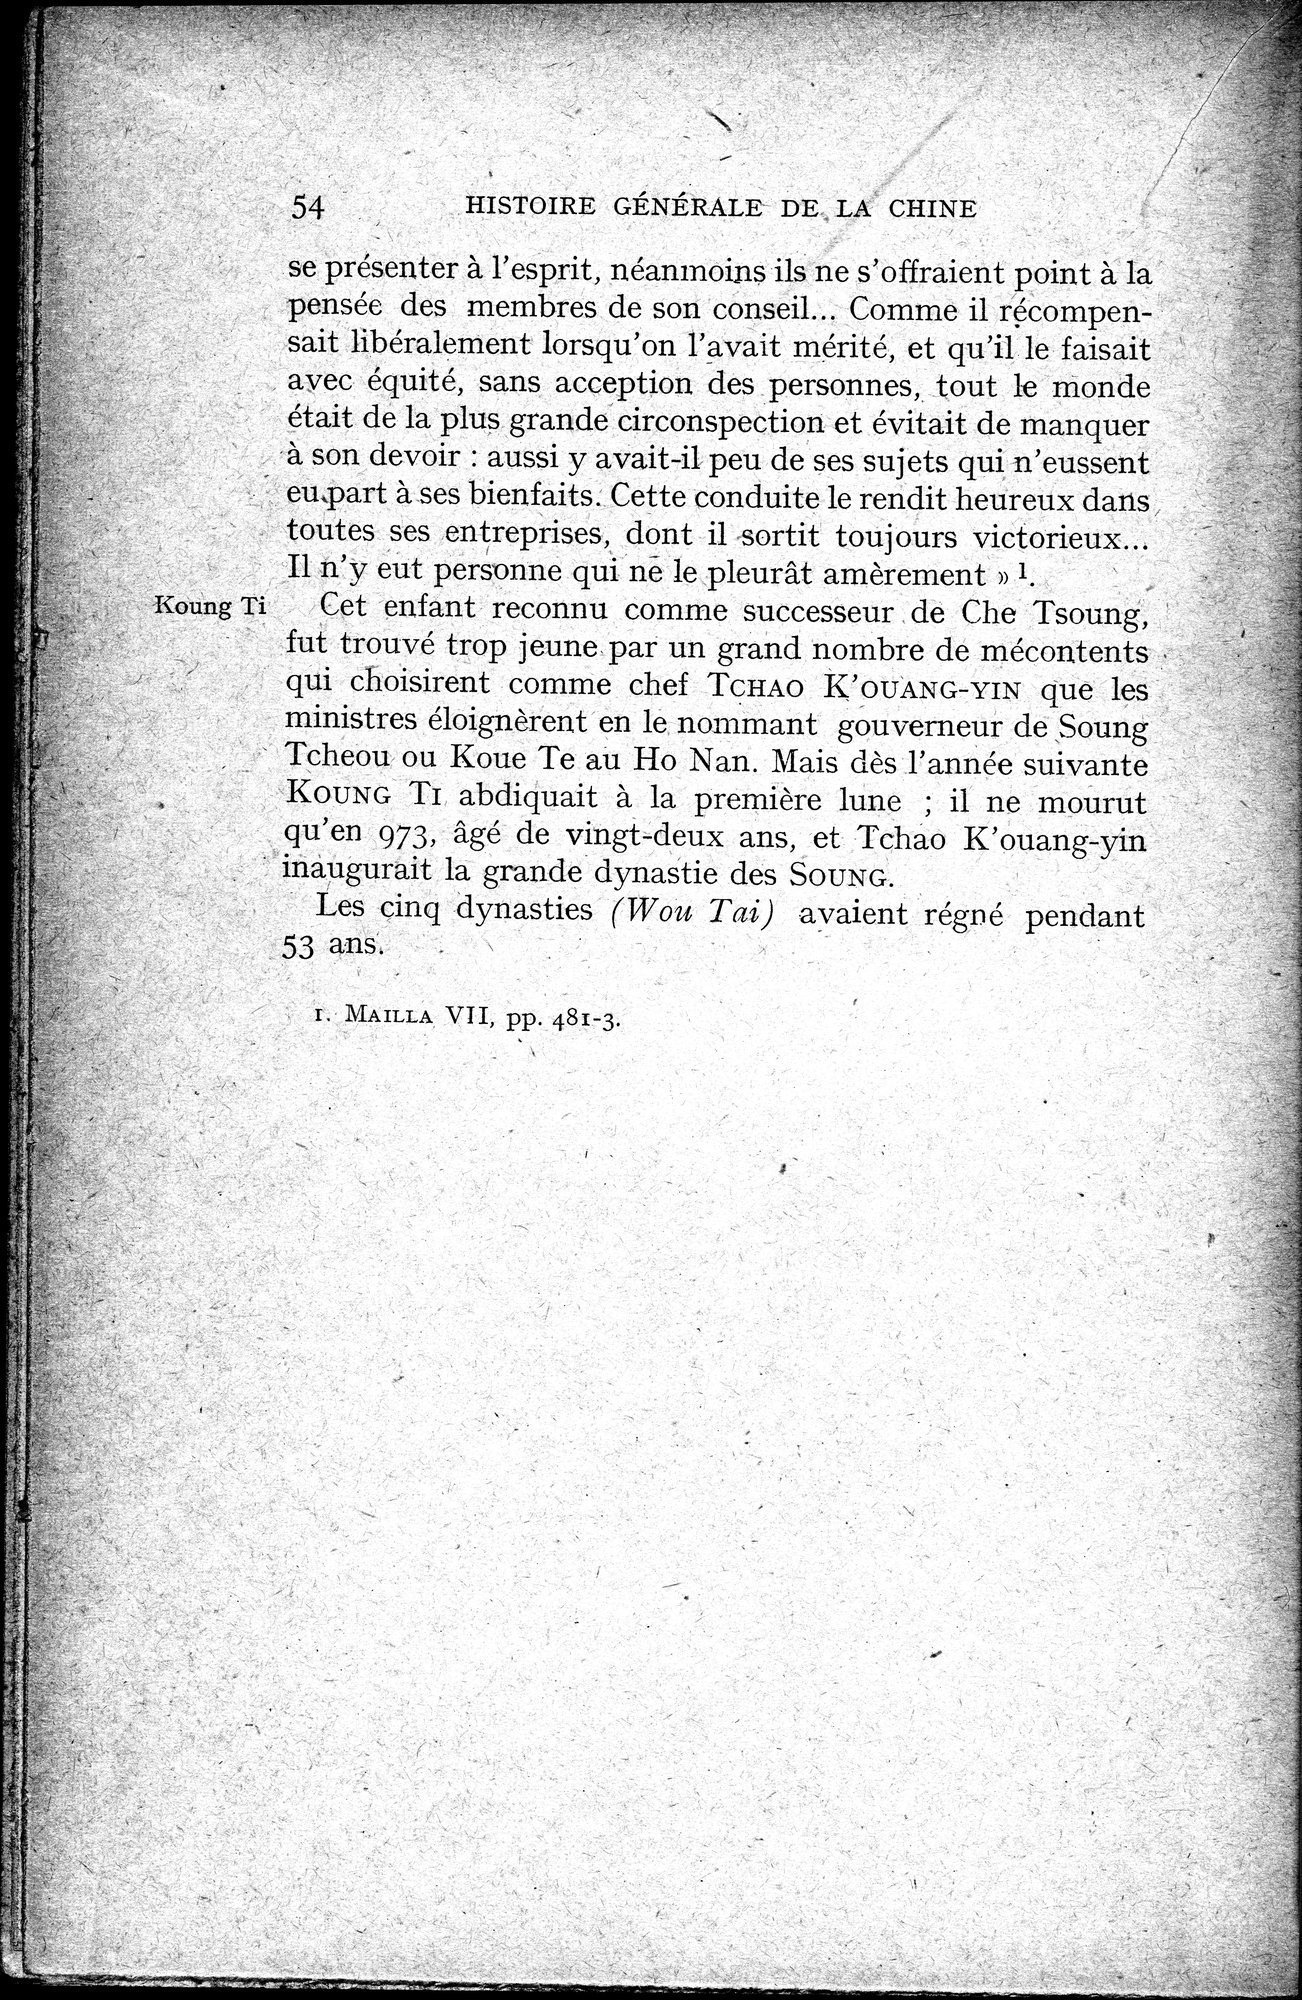 Histoire Générale de la Chine : vol.2 / Page 56 (Grayscale High Resolution Image)